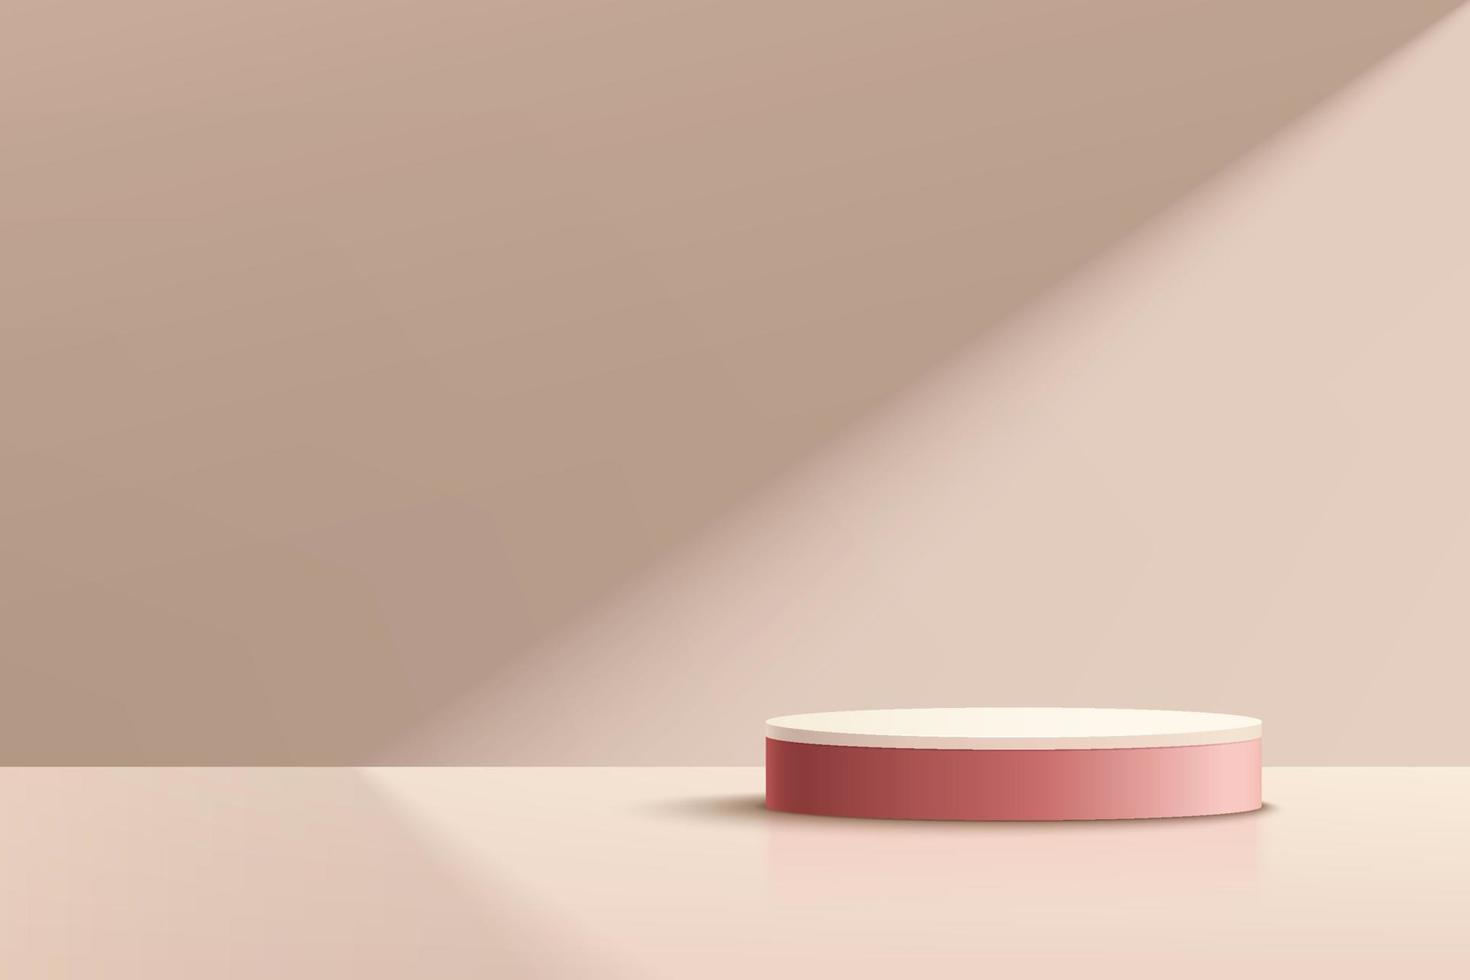 Podio con piattaforma a cilindro rosa scuro in stile minimal. illuminazione delle finestre. scena di parete astratta di colore beige. piedistallo geometrico con ombra. forma 3d di rendering vettoriale per la presentazione del prodotto.